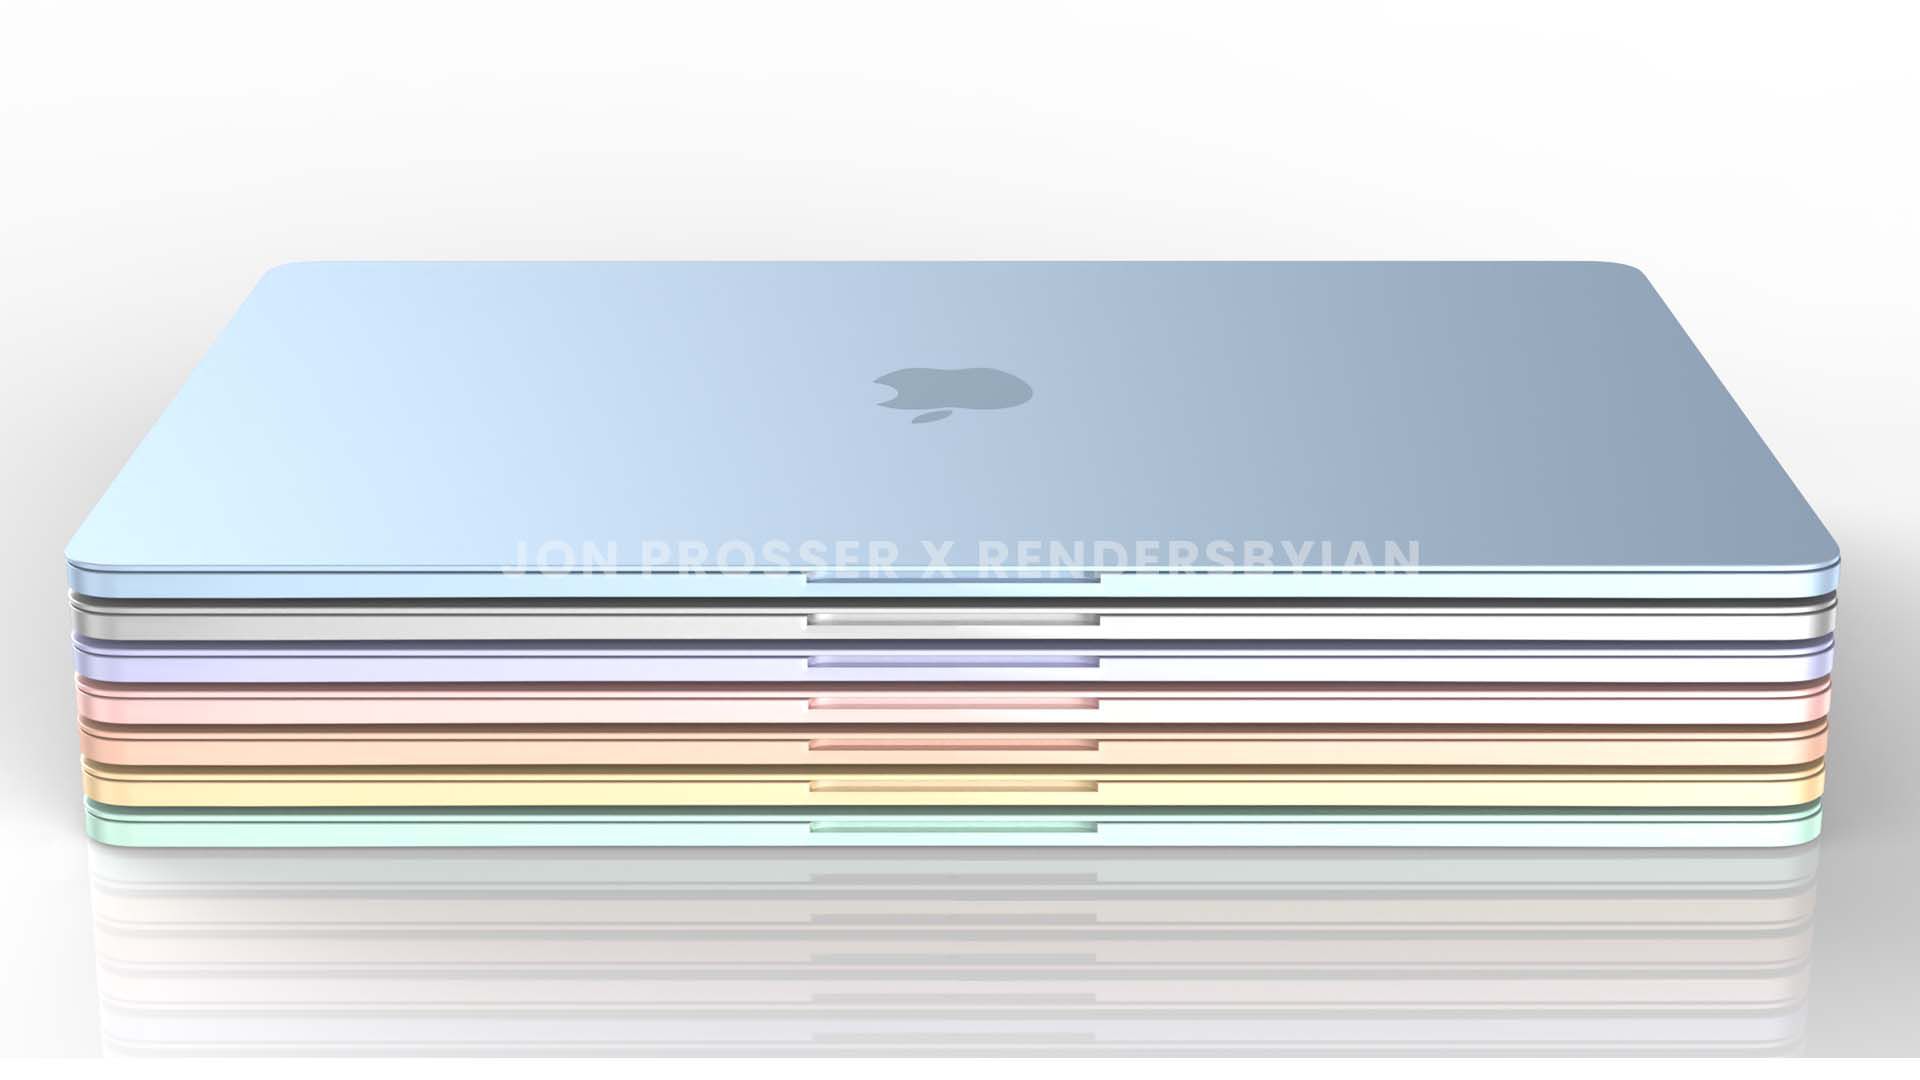 Images Reveal Colorful New Macbook Air Design Macrumors